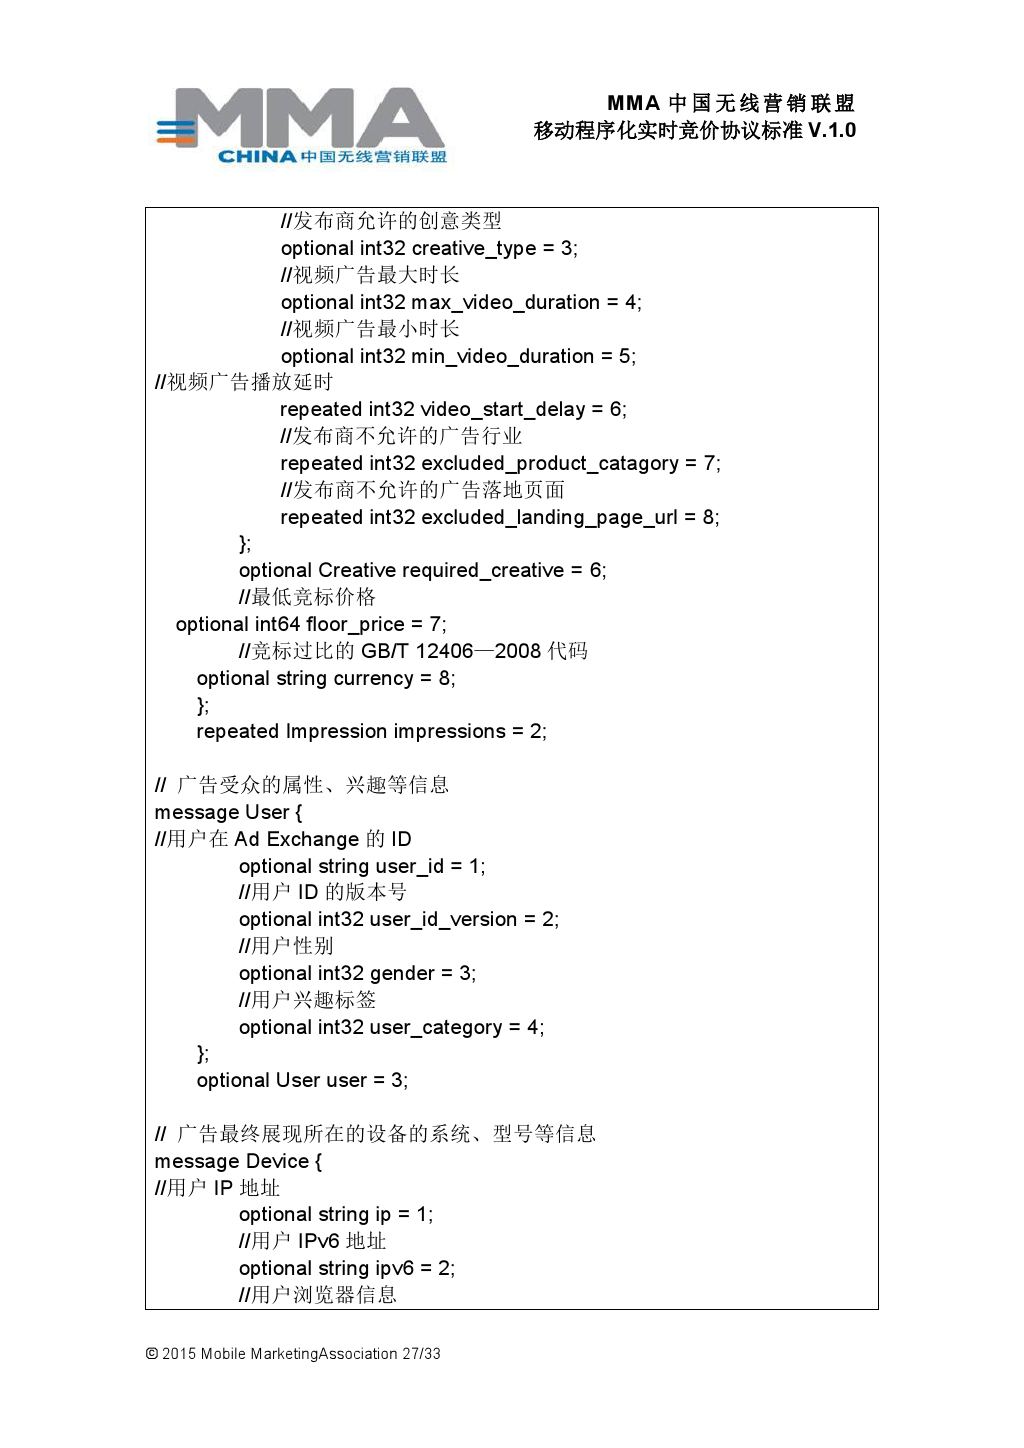 MMA中国无线营销联盟移动程序化实时竞价协议标准V.1.0_000028